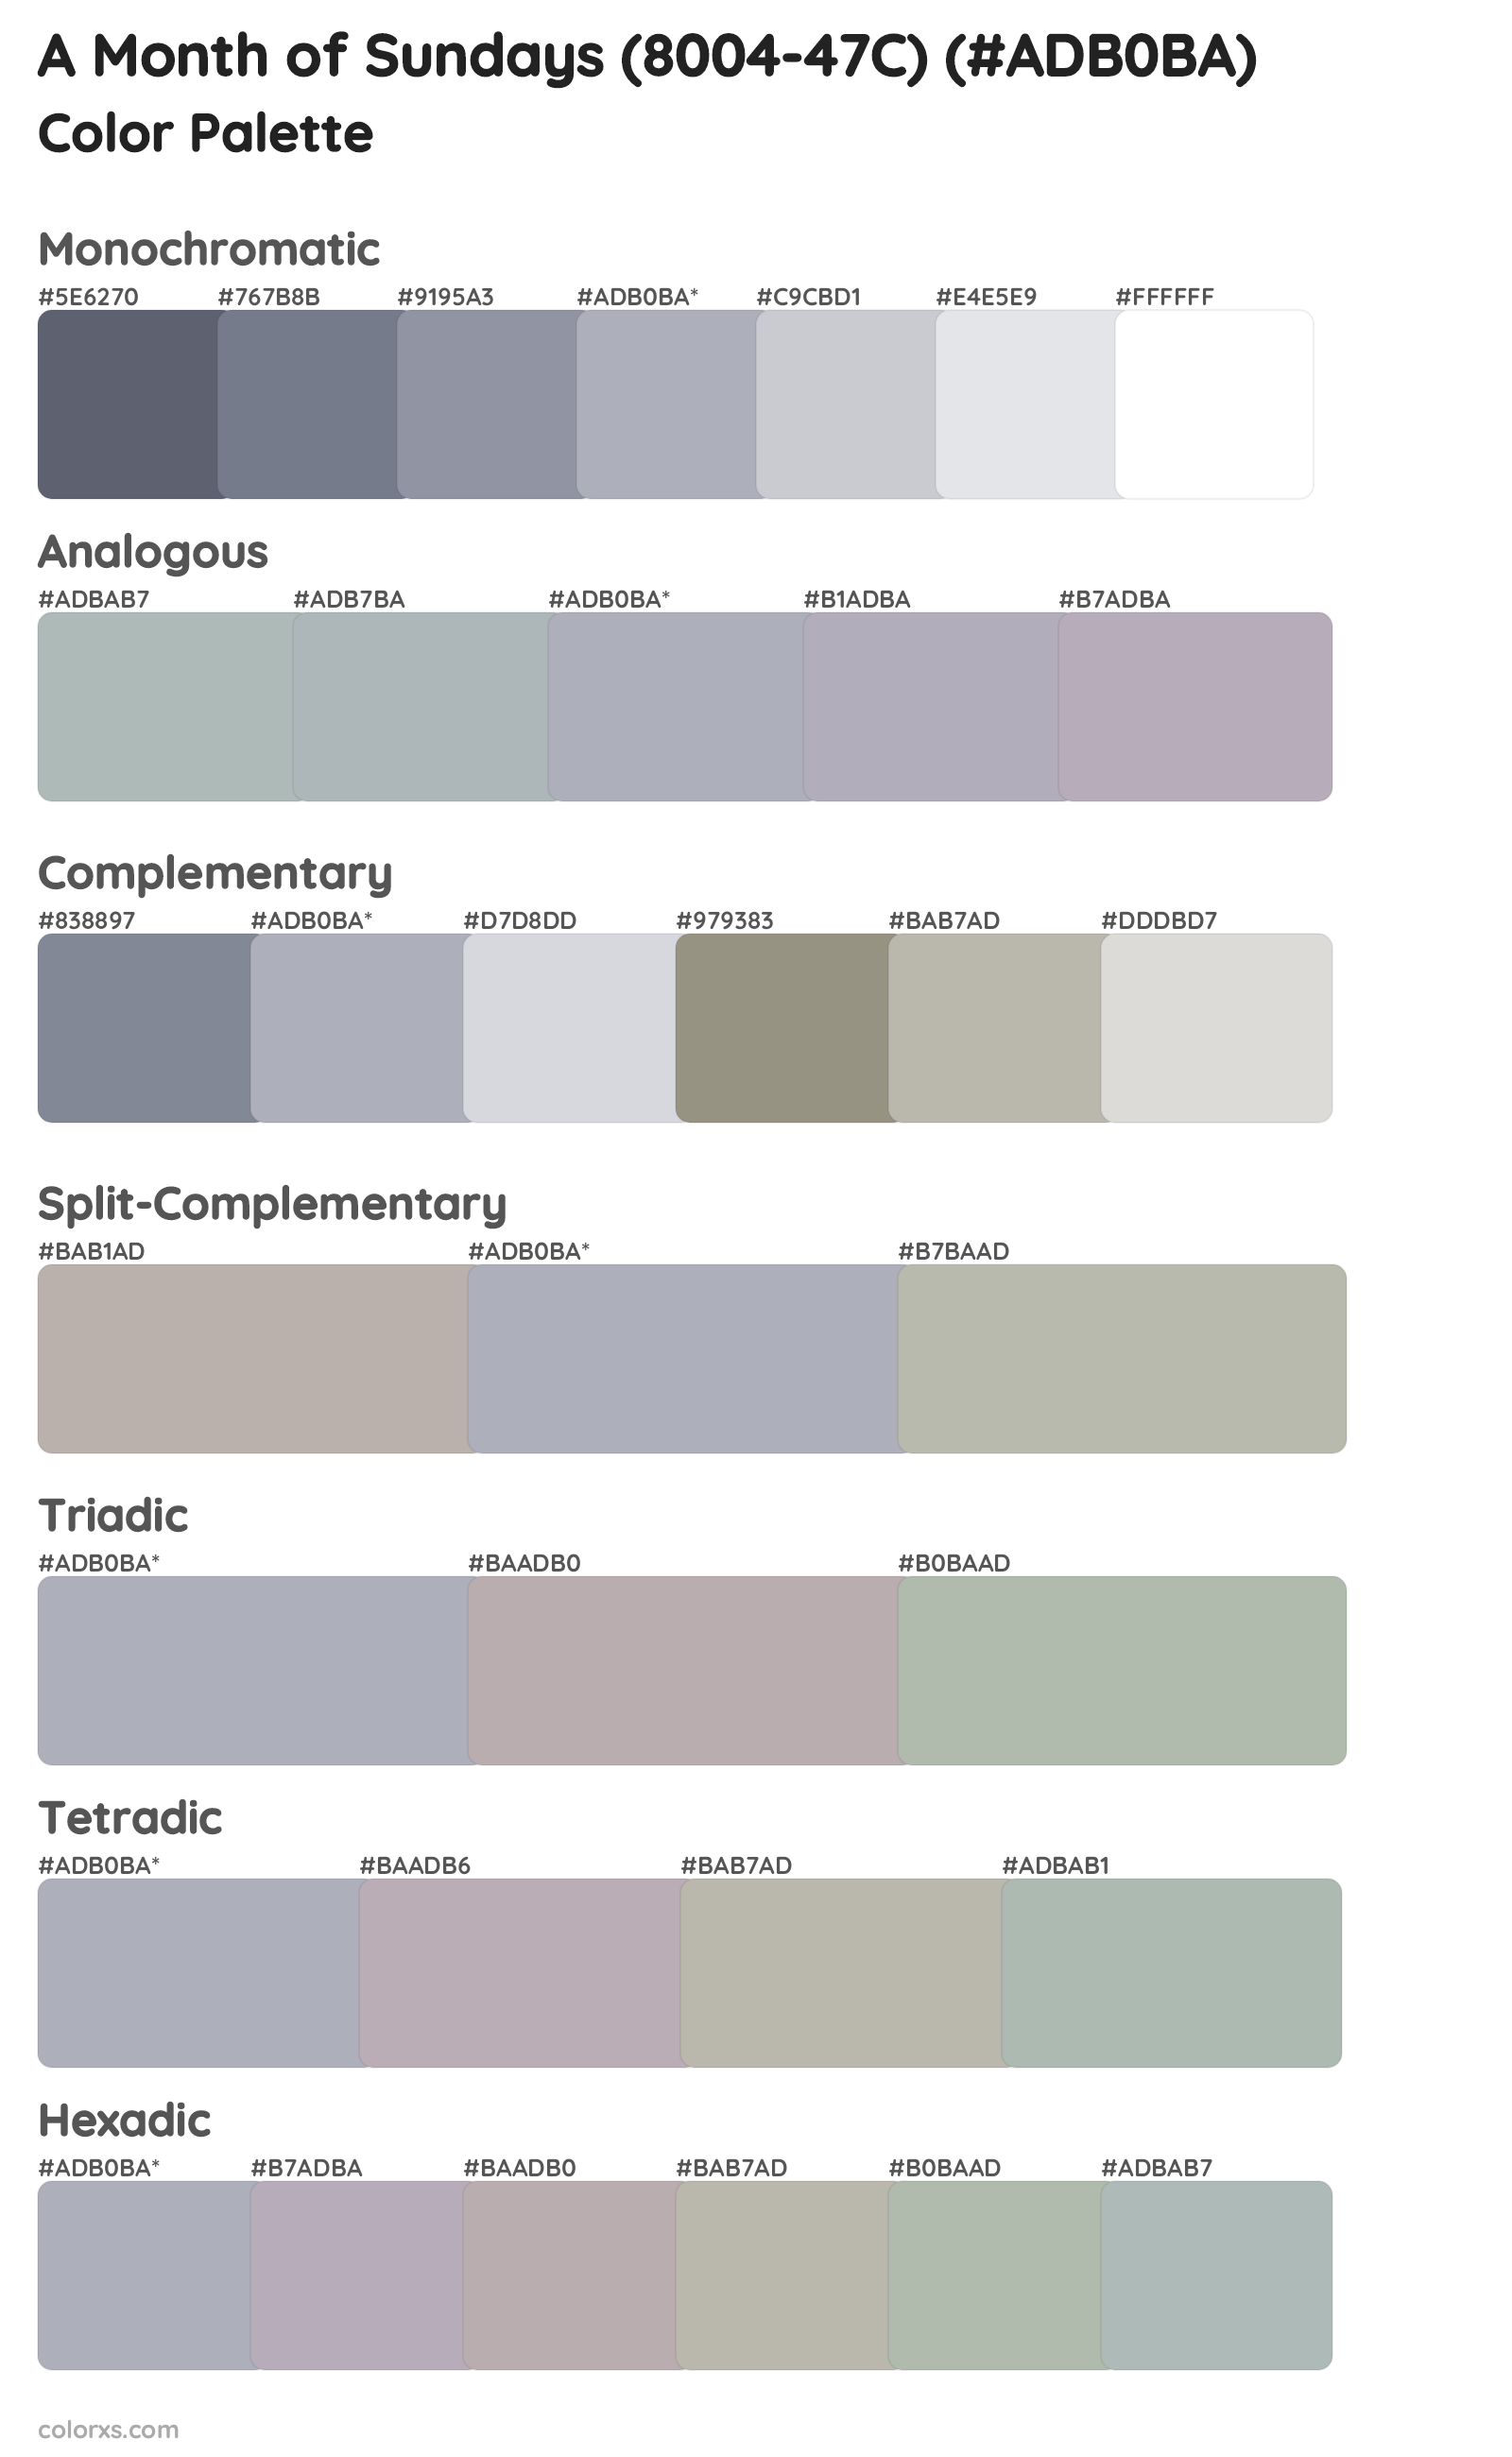 A Month of Sundays (8004-47C) Color Scheme Palettes